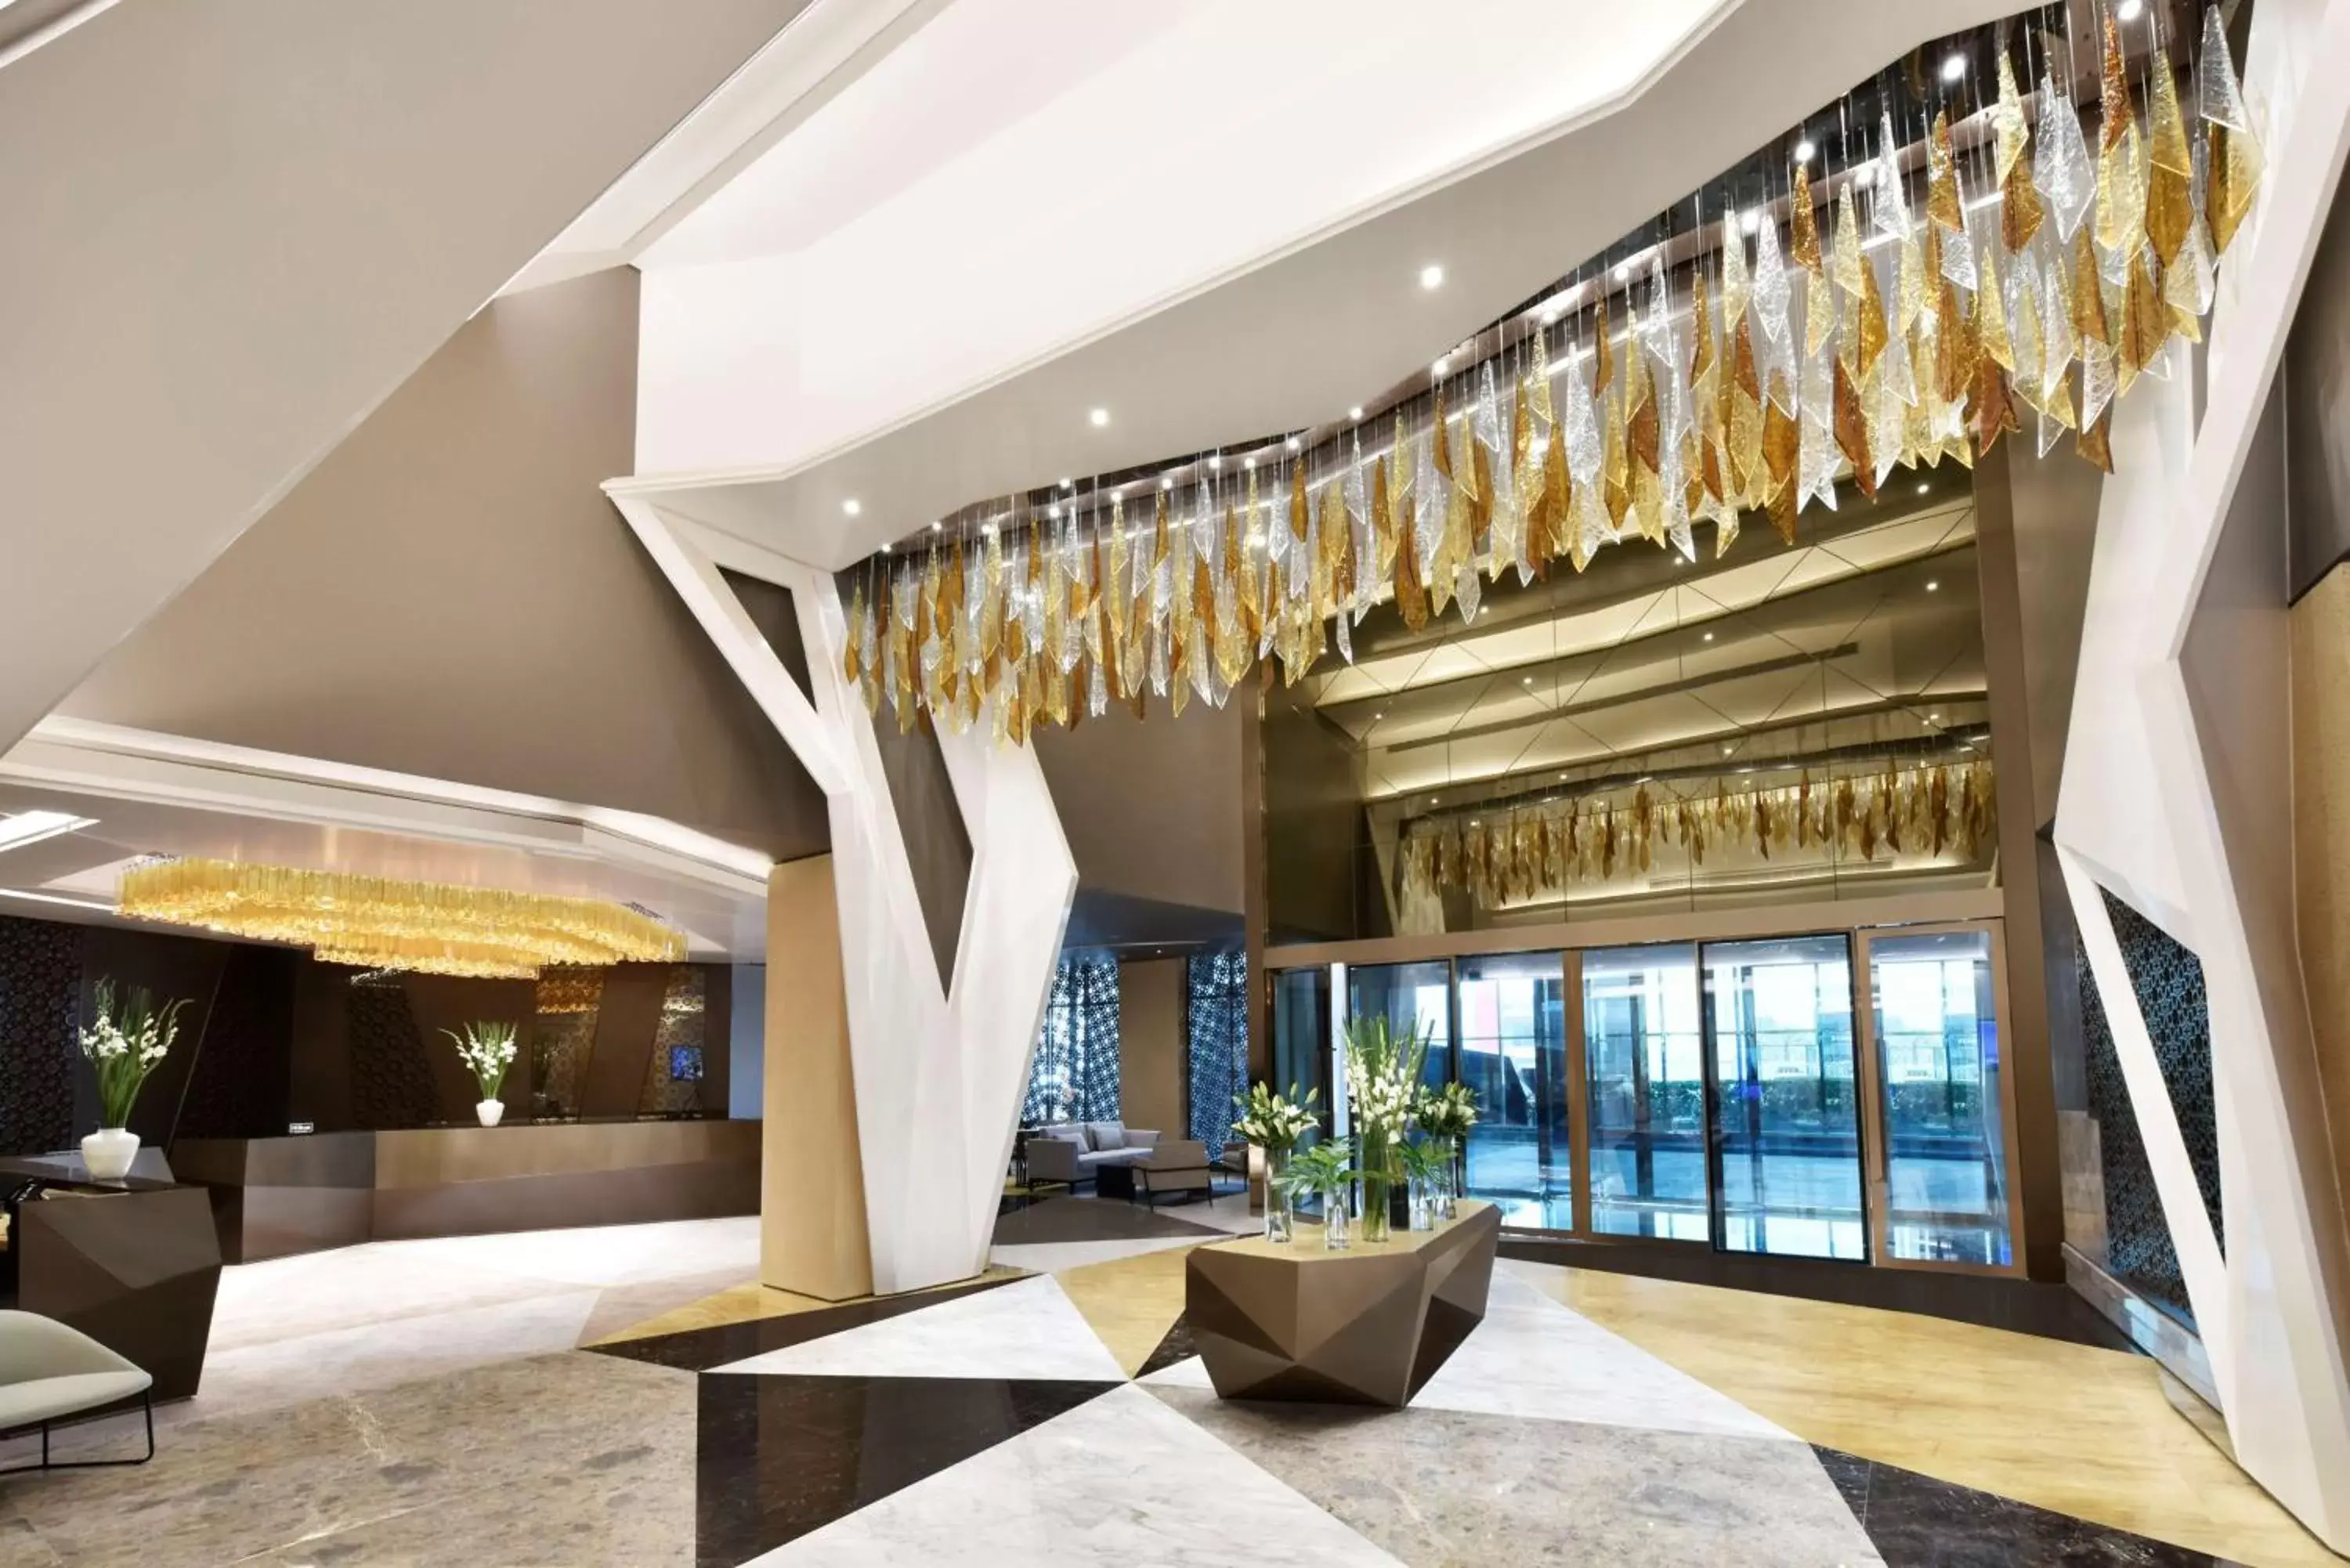 Lobby or reception in Hilton Bahrain